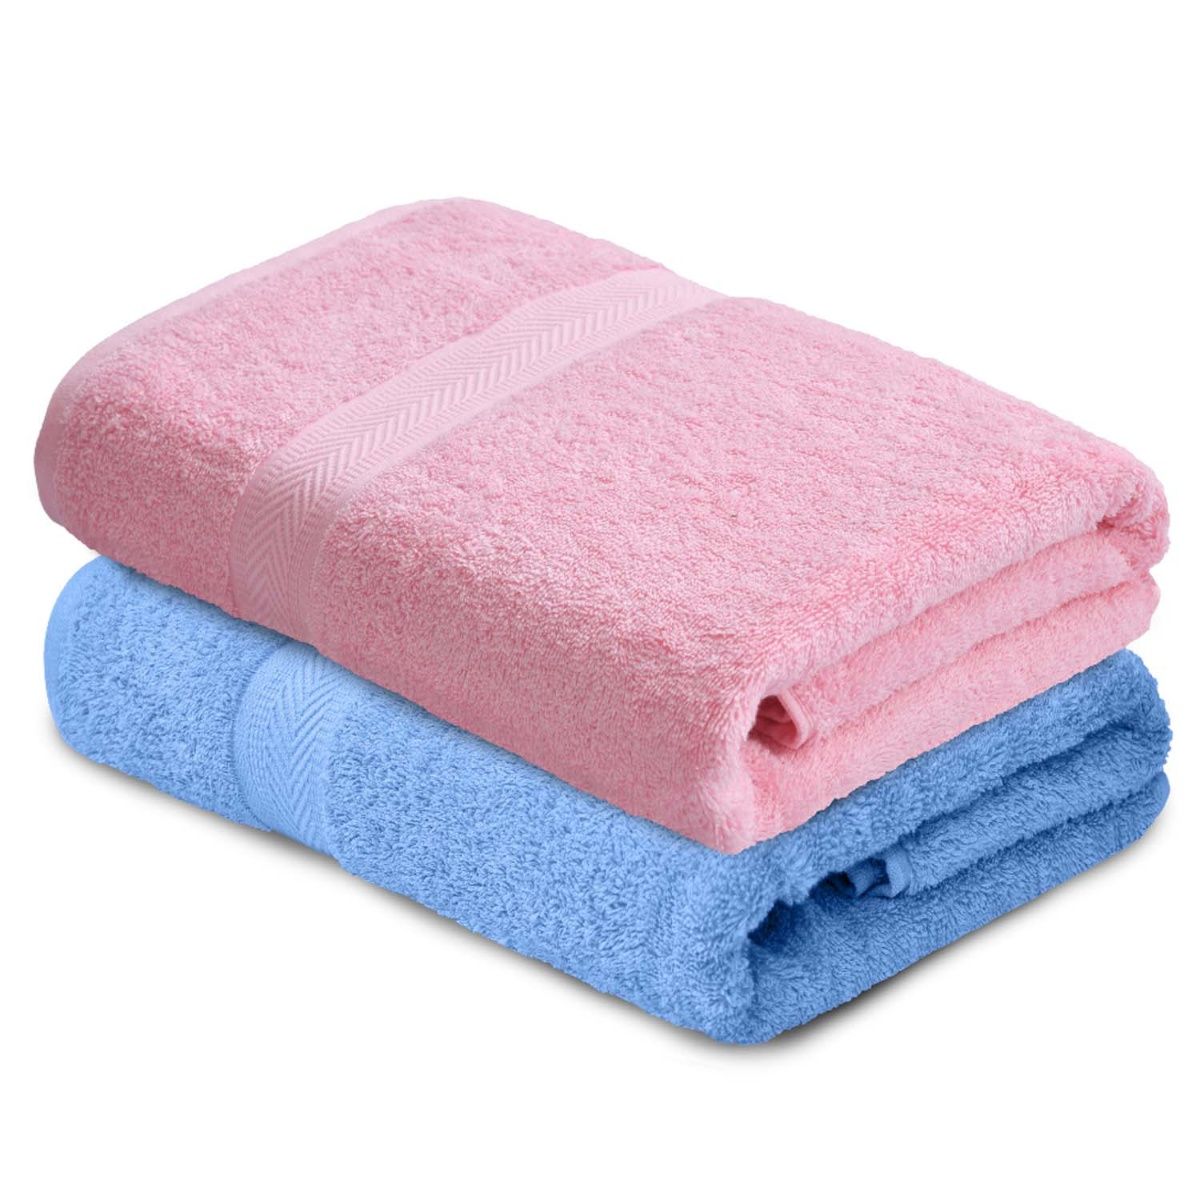 Haus & Kinder 500 GSM Bath Towel Set (Pink & Blue) - Set of 2